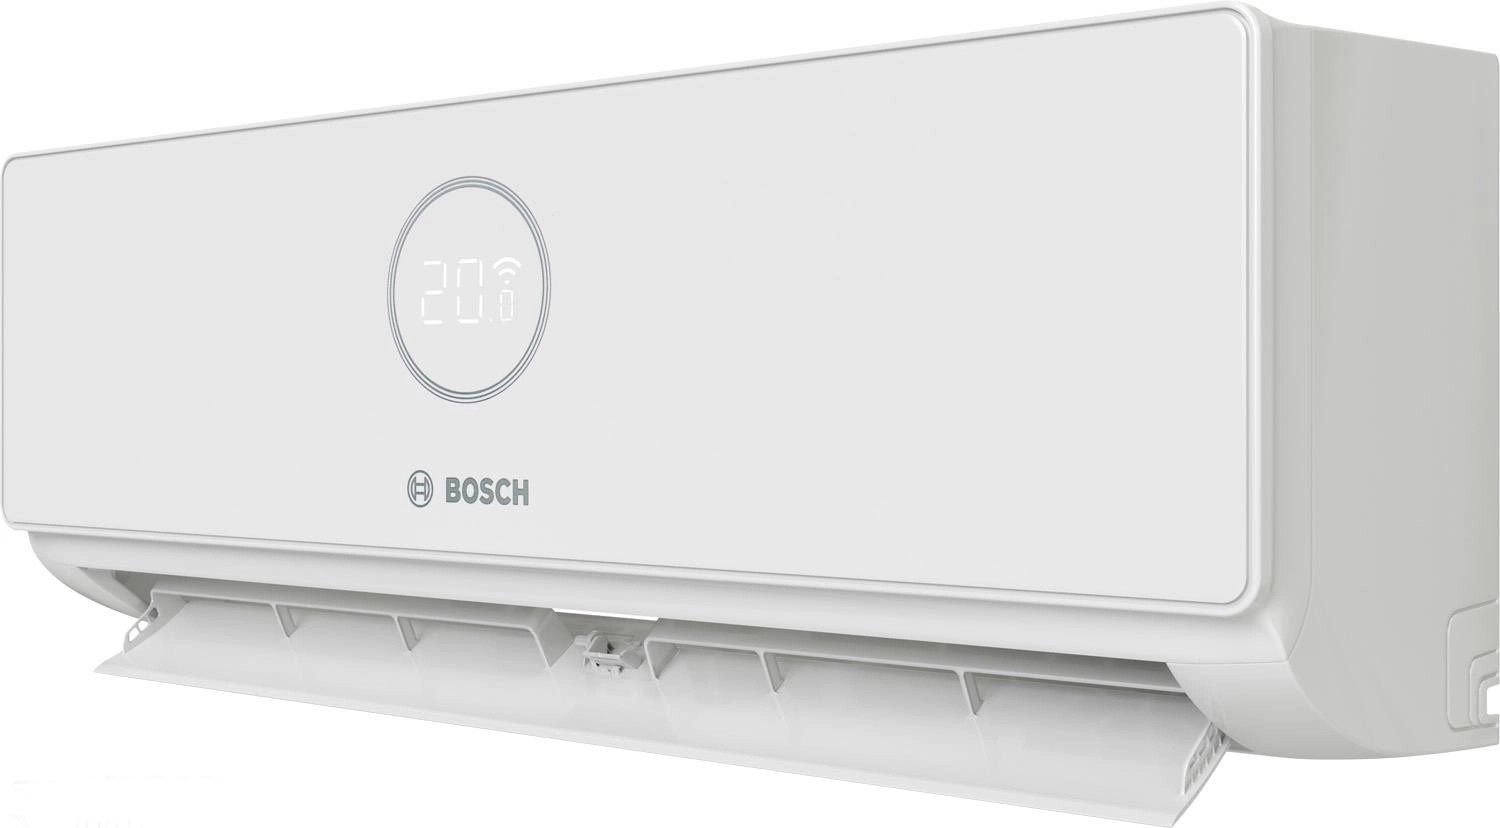 Внутренний блок мультисплит-системы Bosch CL5000i W 35E, 3,5 кВт отзывы - изображения 5